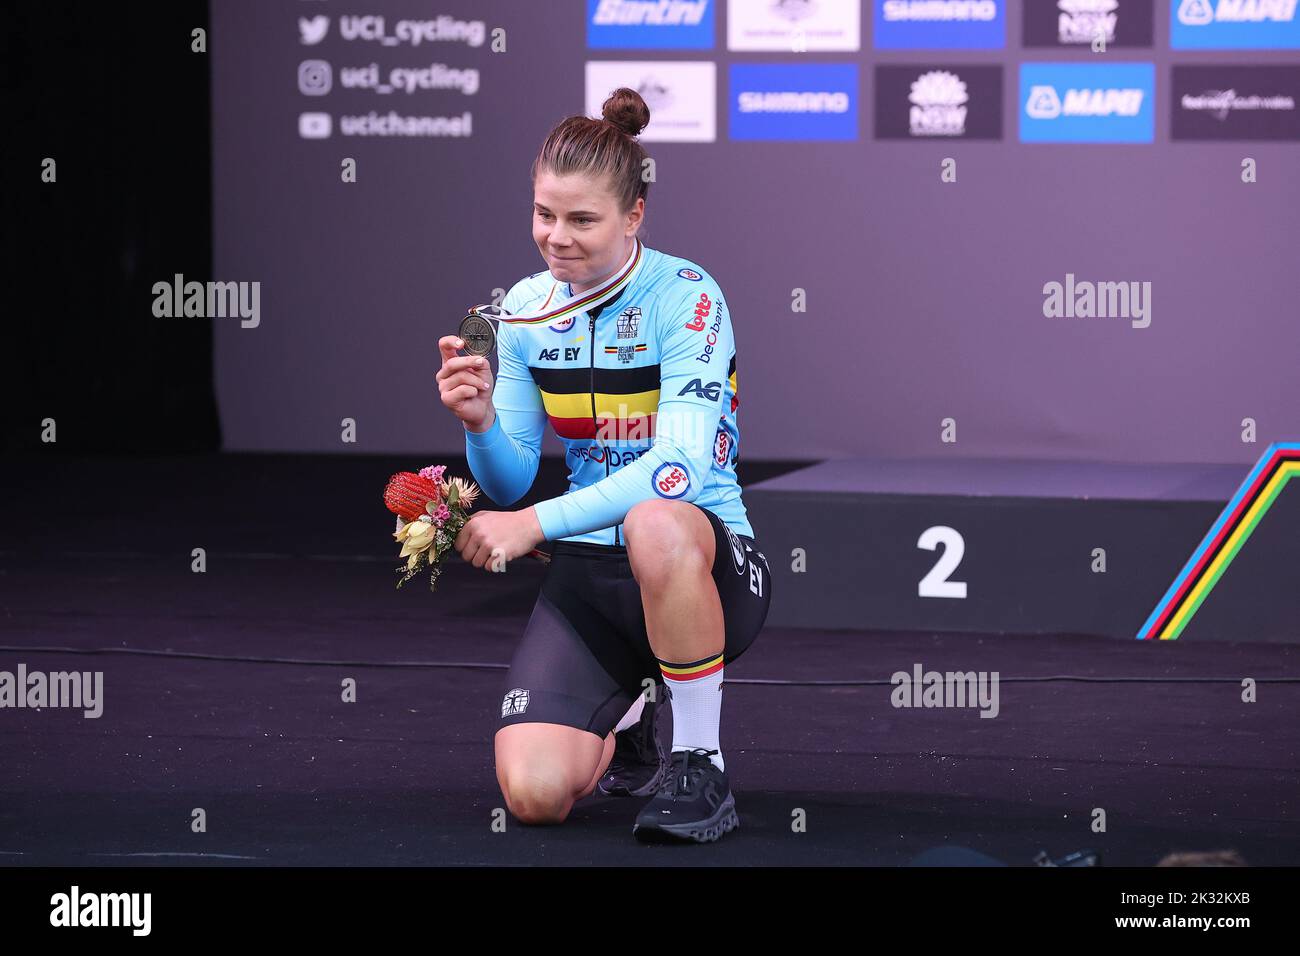 Lotte Kopecky wins Schaal Sels in new rainbow jersey •